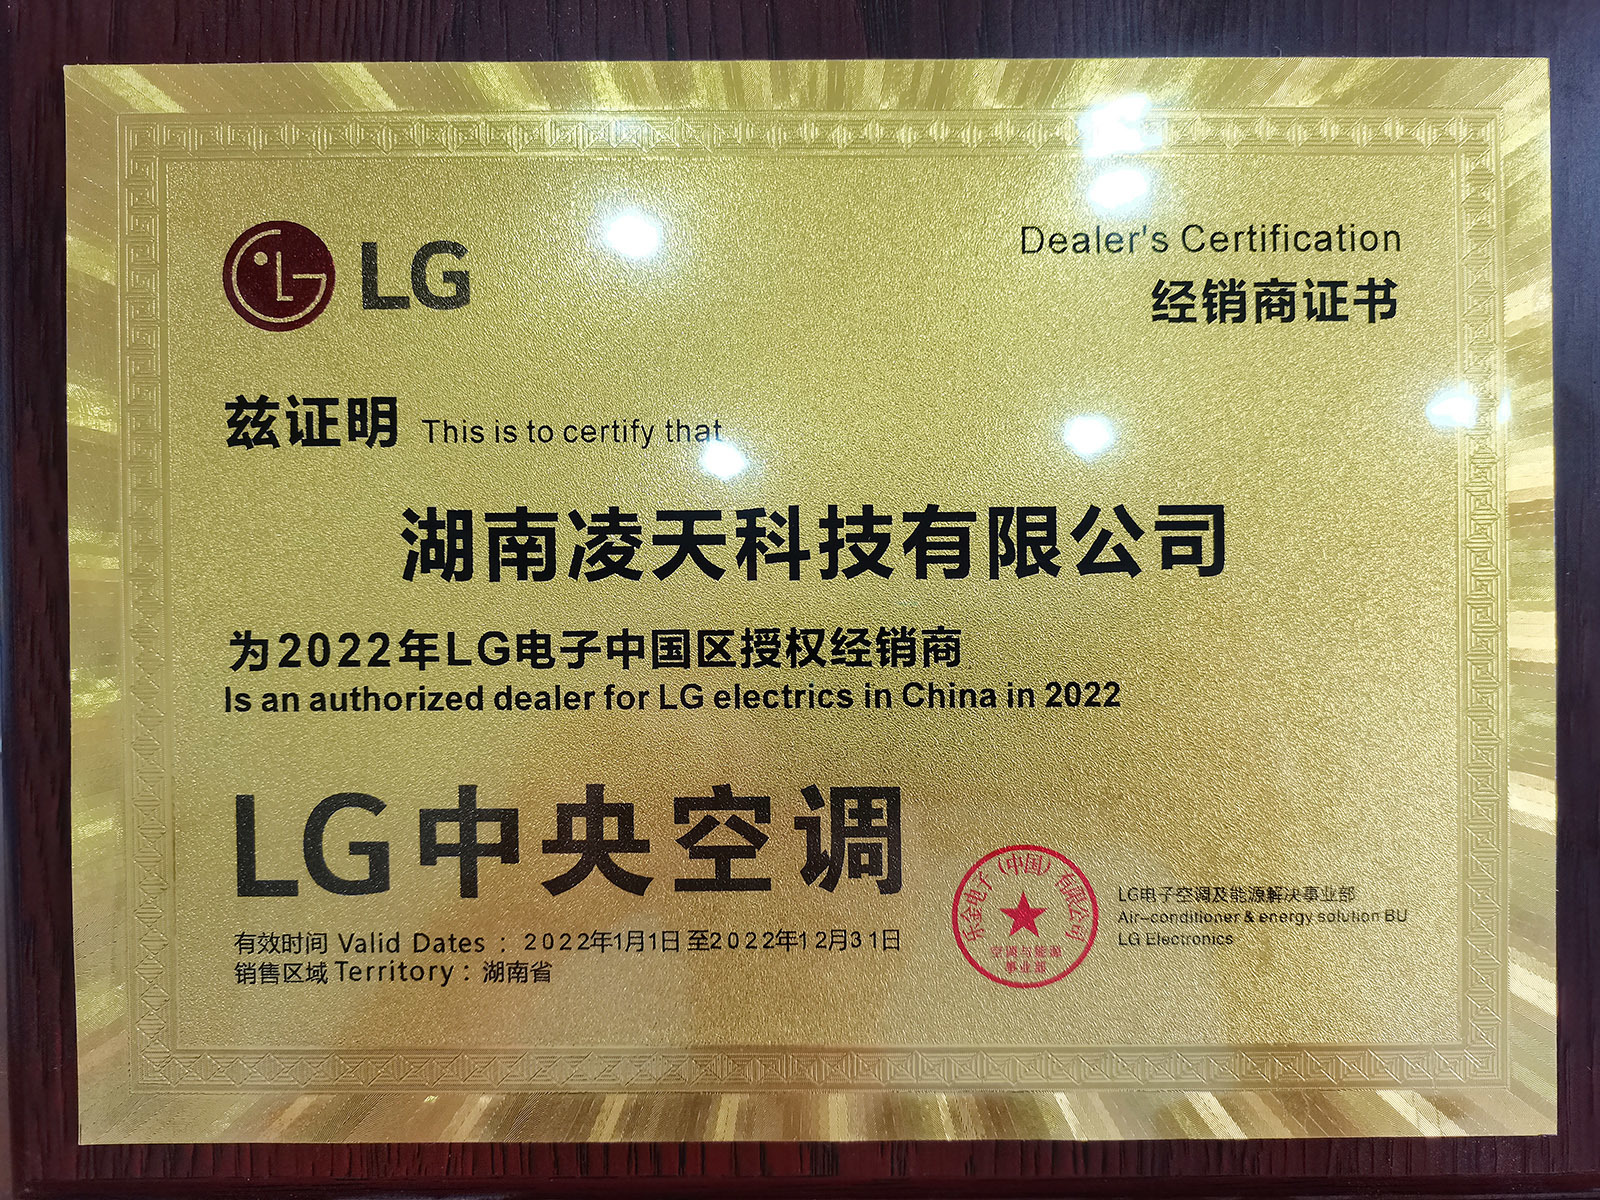 LG電子中央空調中國區授權核心經銷商